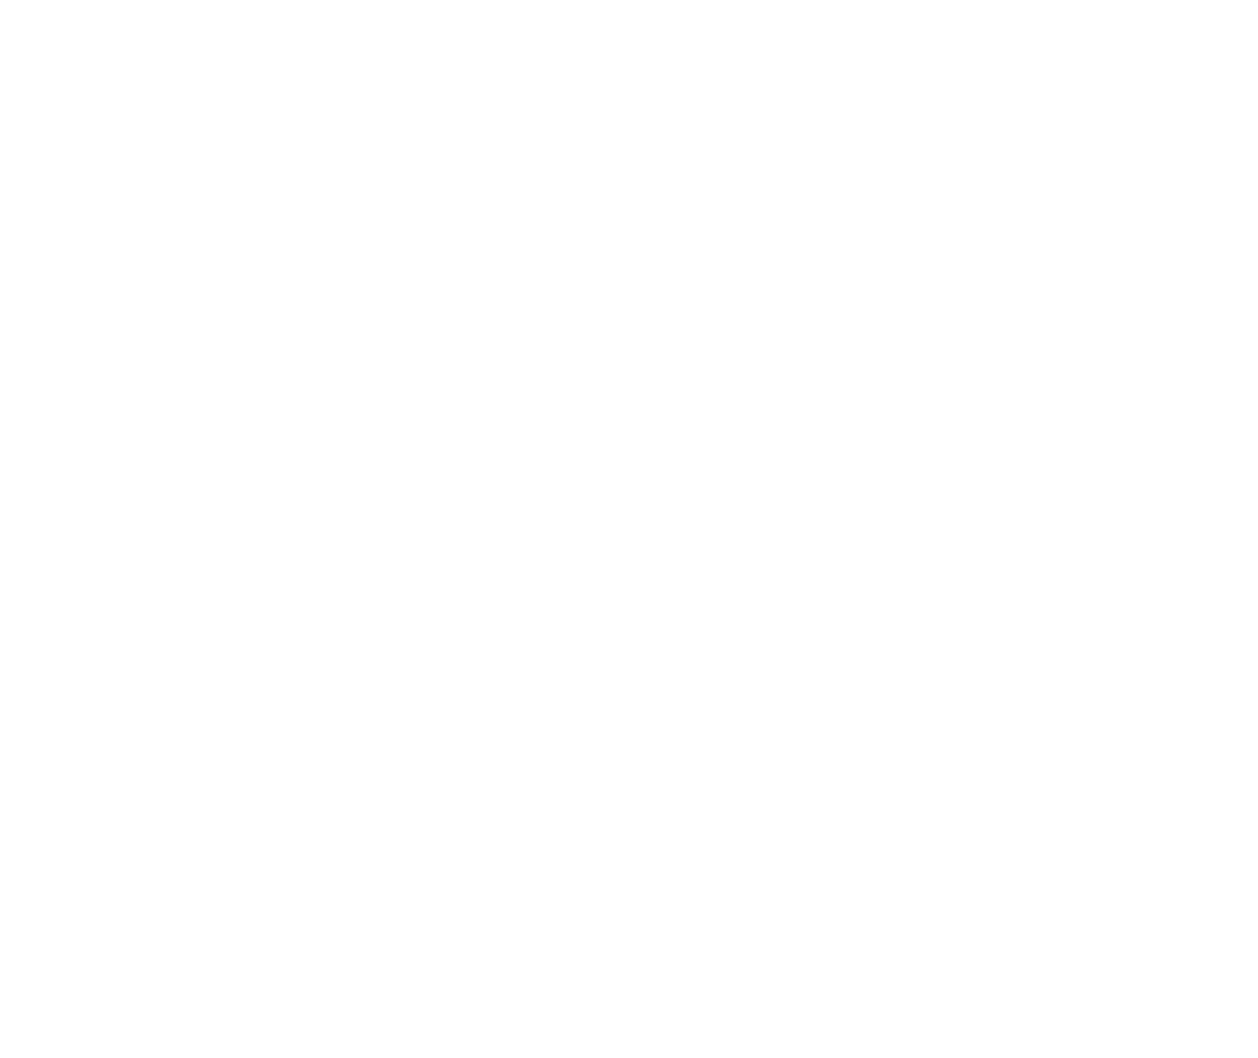 Wynnum Baptist Church